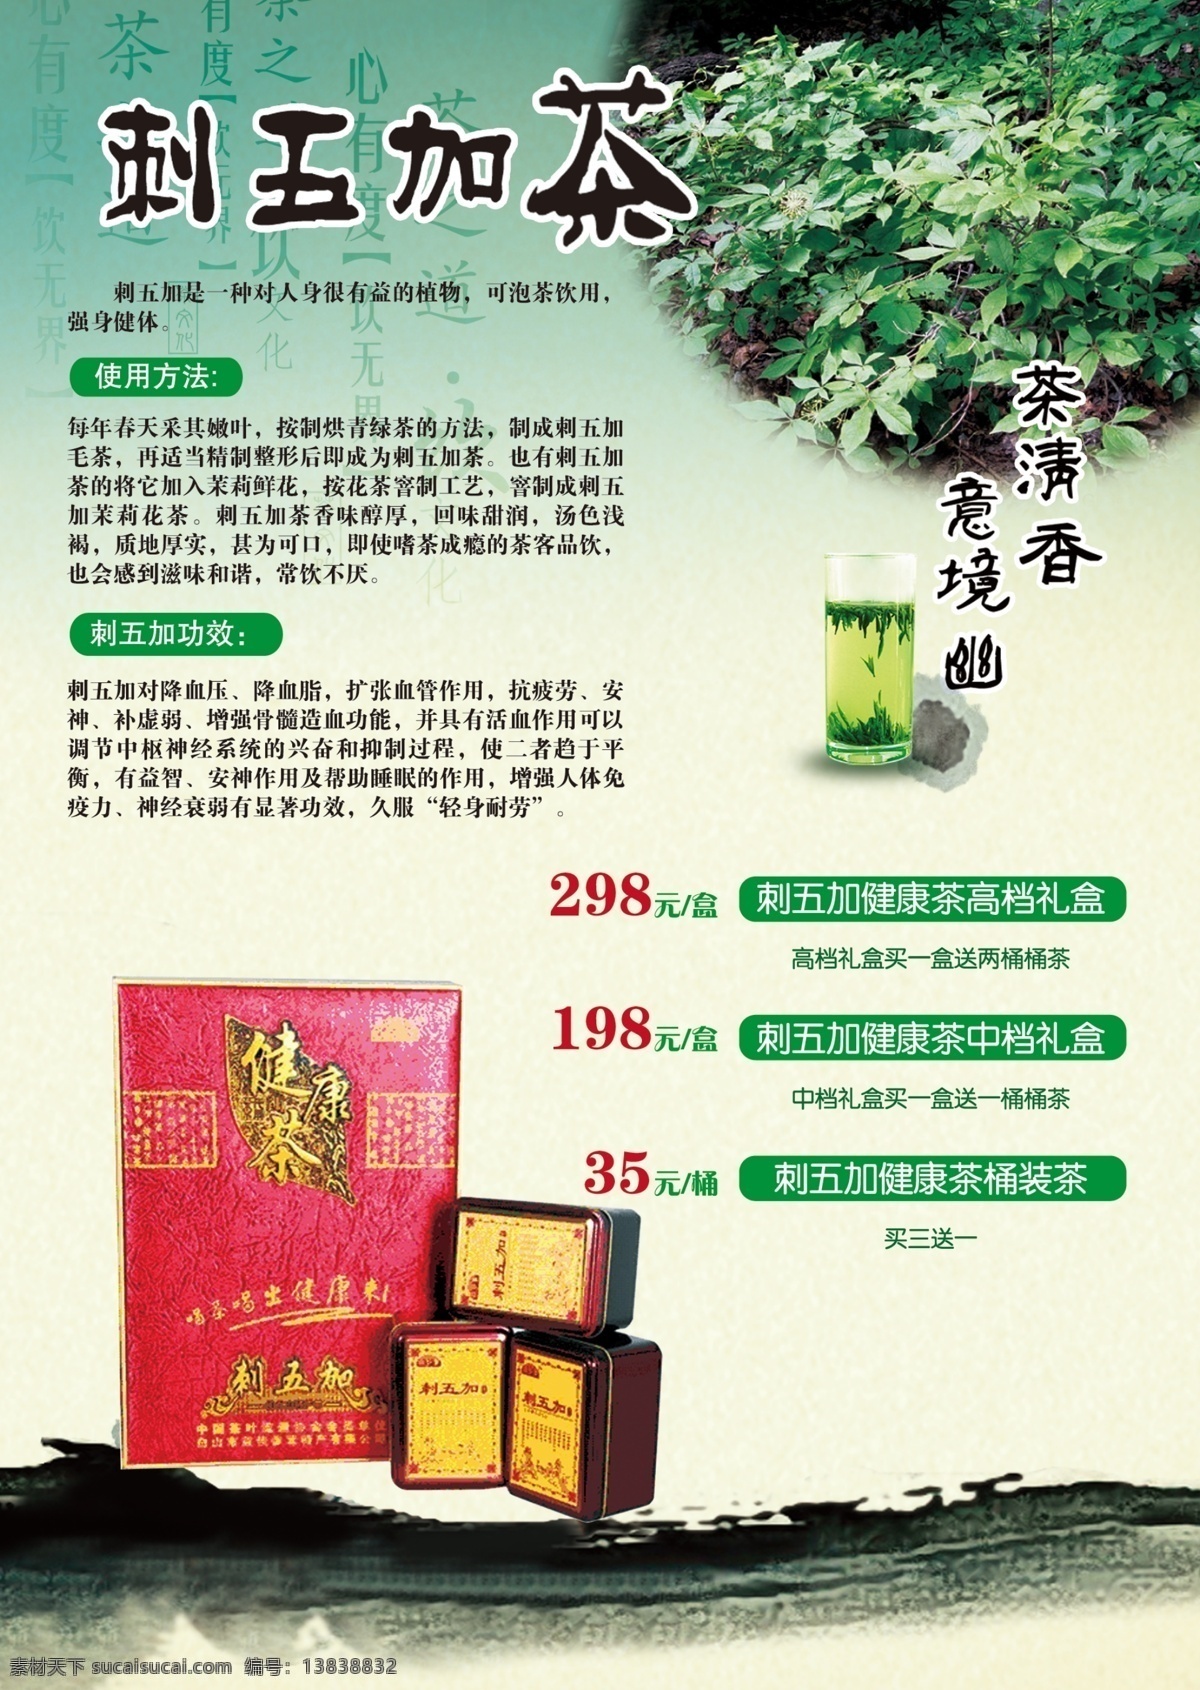 茶叶宣传单 茶叶 宣传单 刺五加 茶产品 dm dm宣传单 广告设计模板 源文件